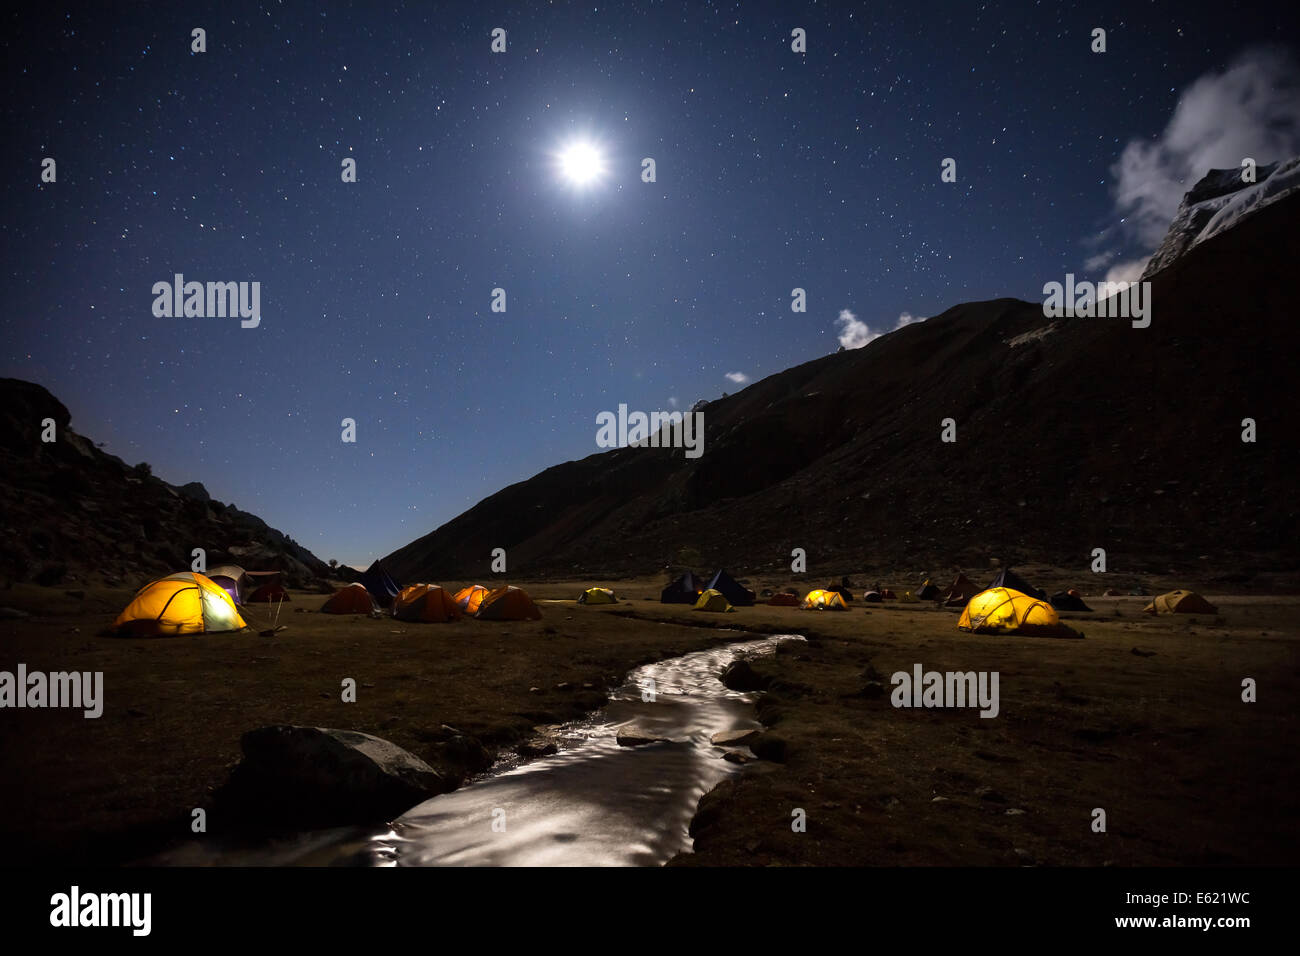 Camp de base de l'Ishinca, nuit à l'Ishinca vallée, Cordillère blanche, Pérou, Amérique du Sud Banque D'Images